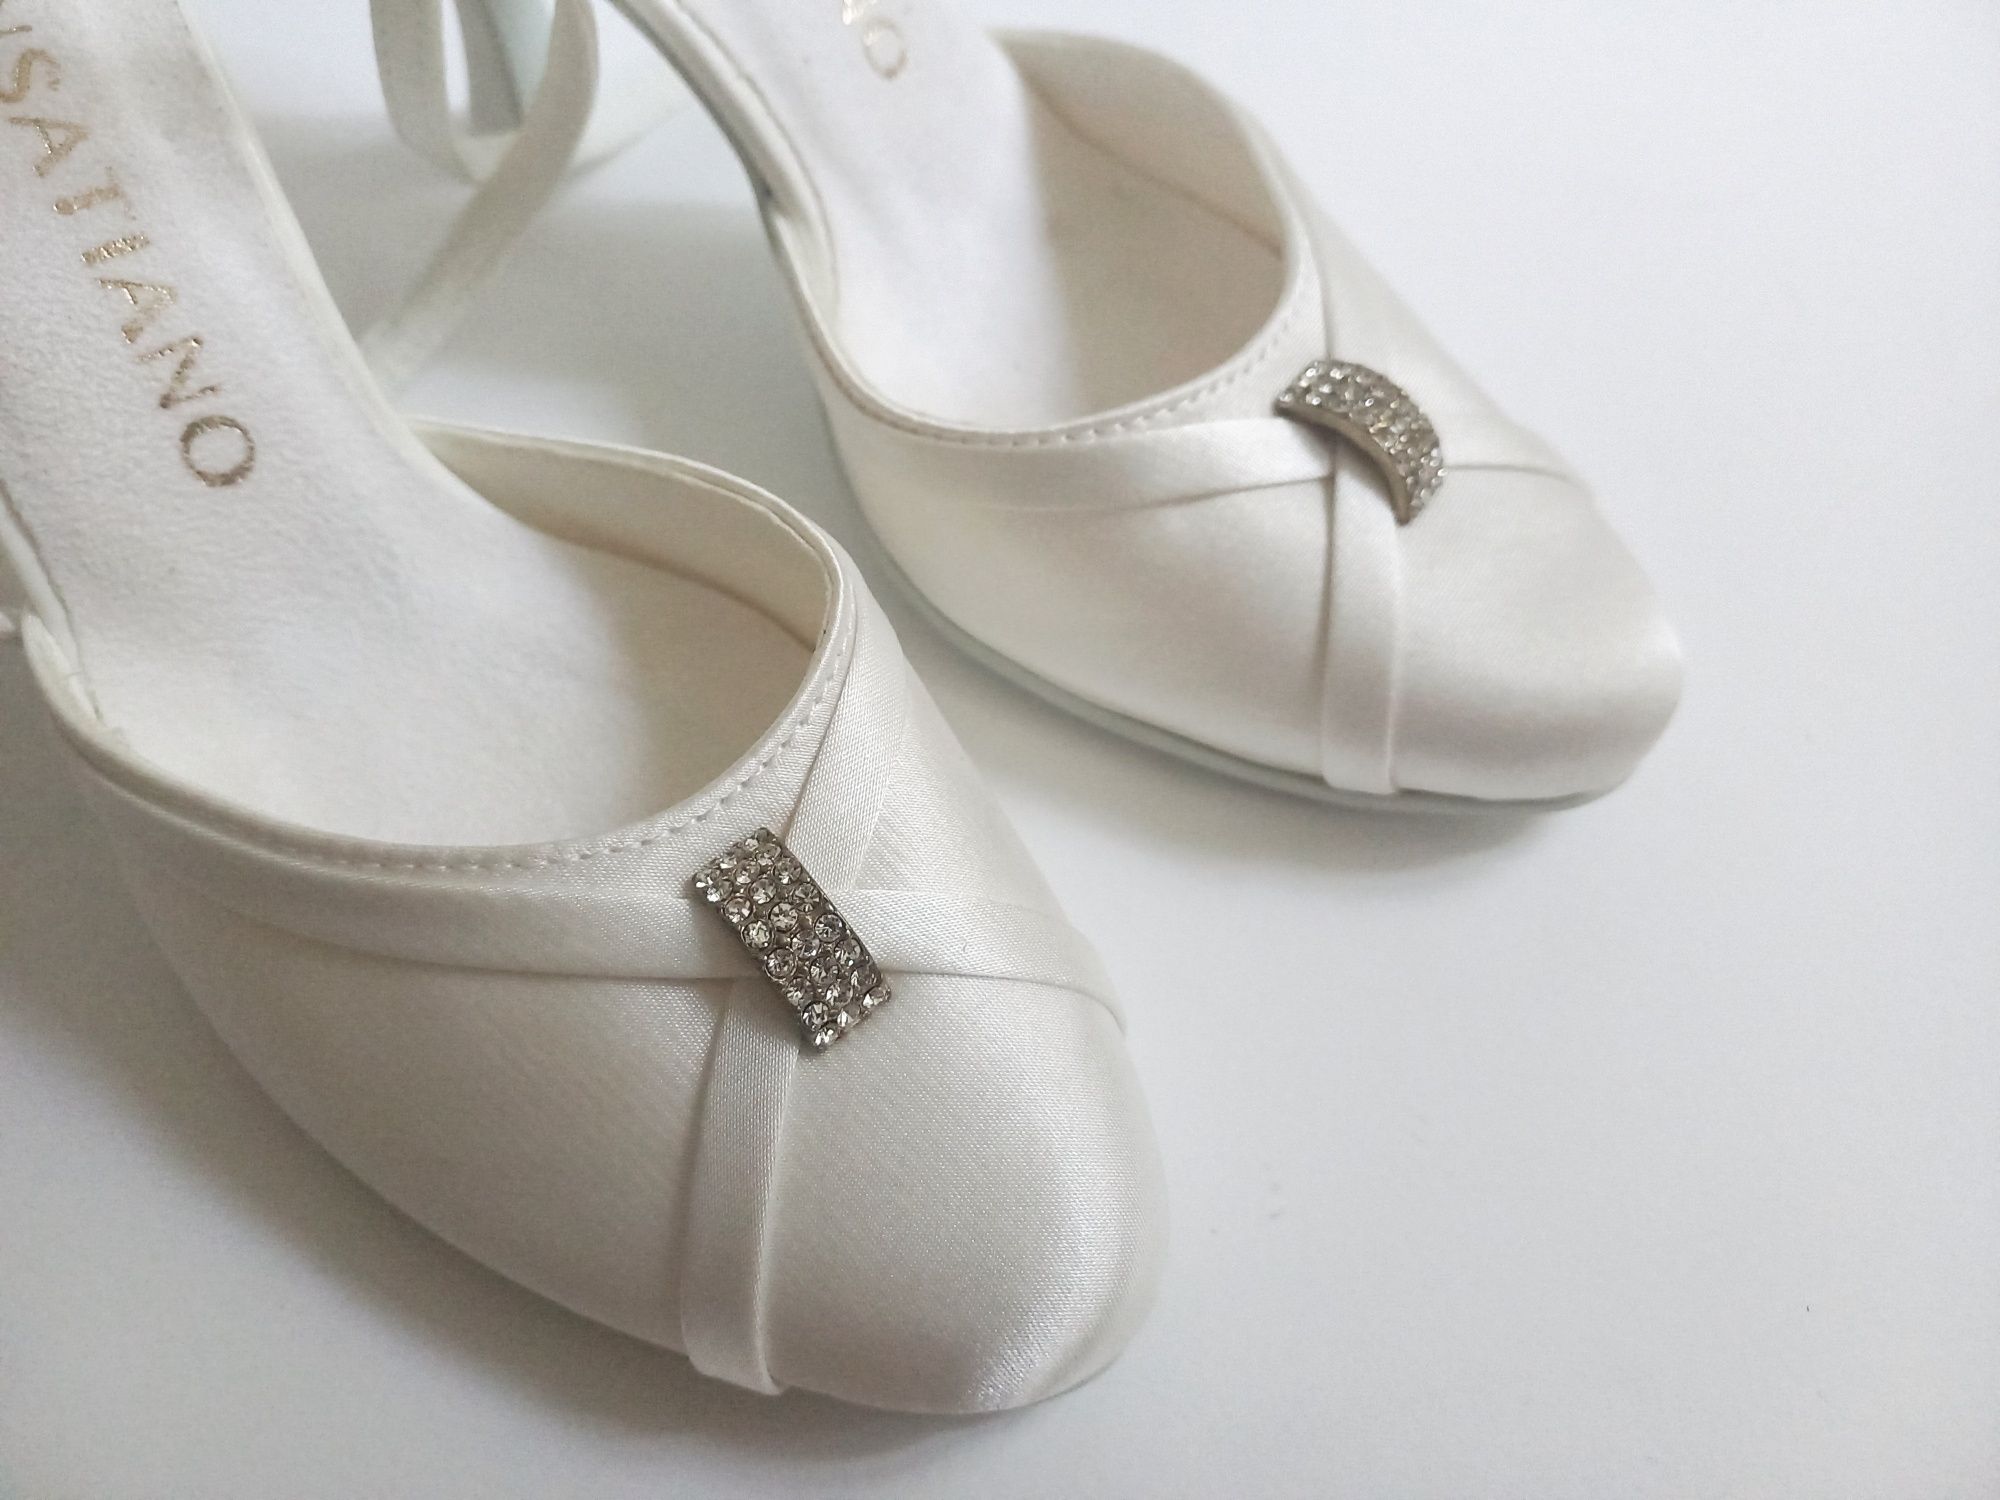 Pantofi albi  sandale de dans mireasa Sensatiano